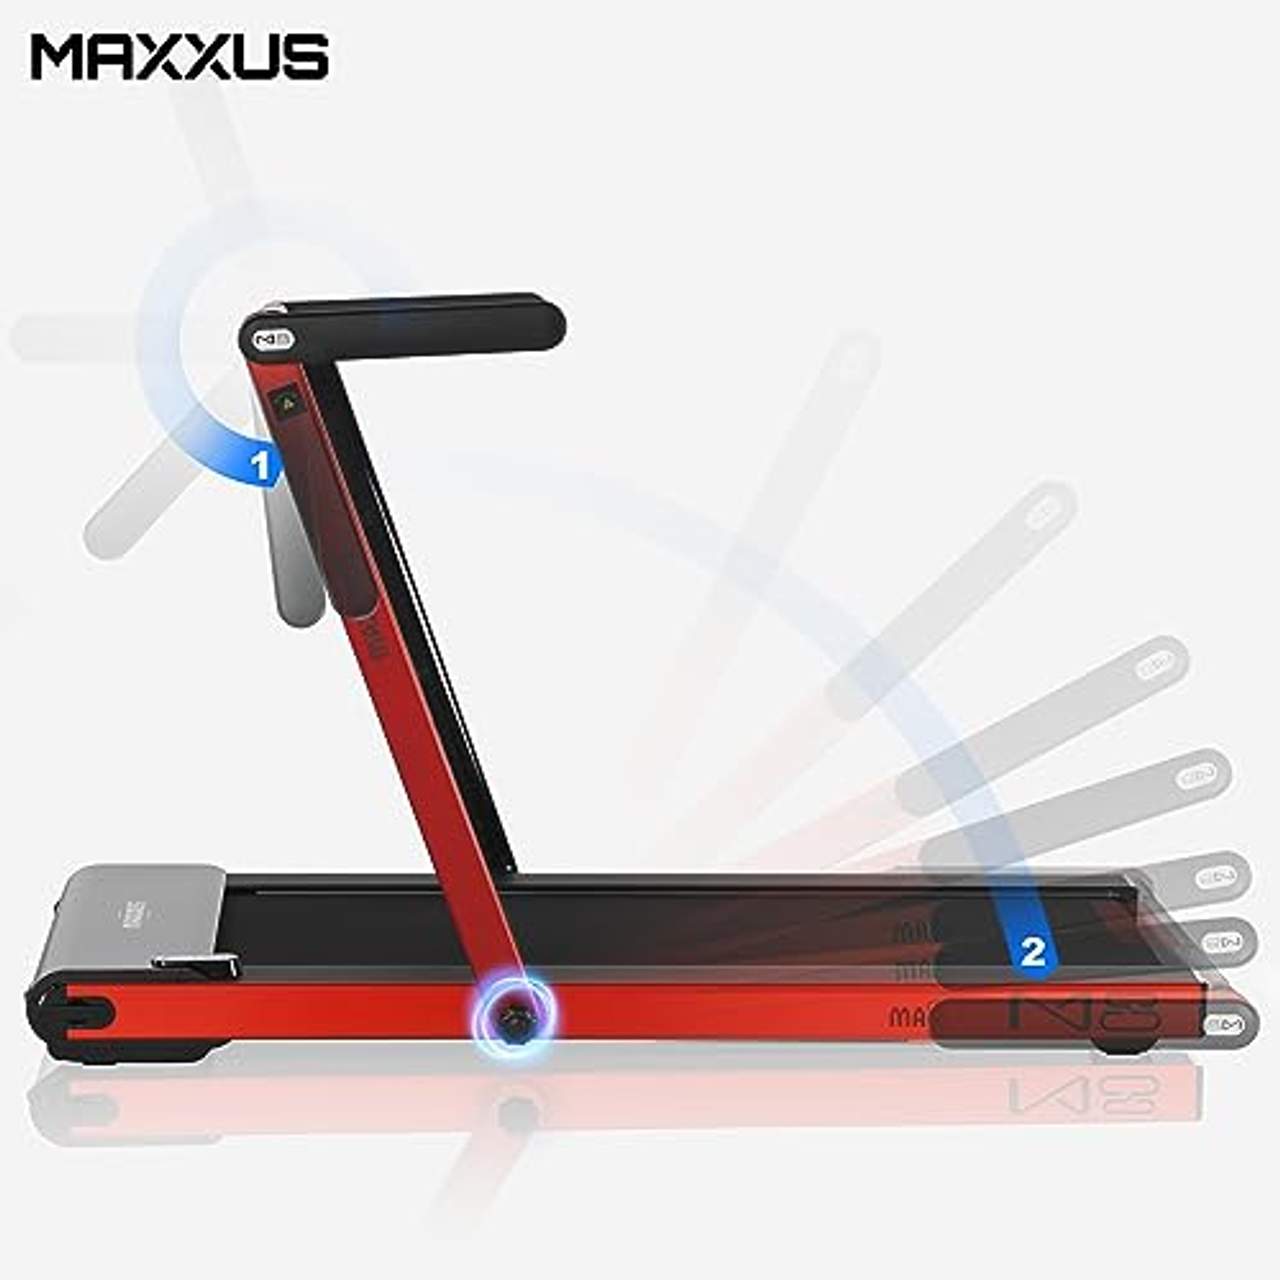 Maxxus Laufband M8 elektrisch